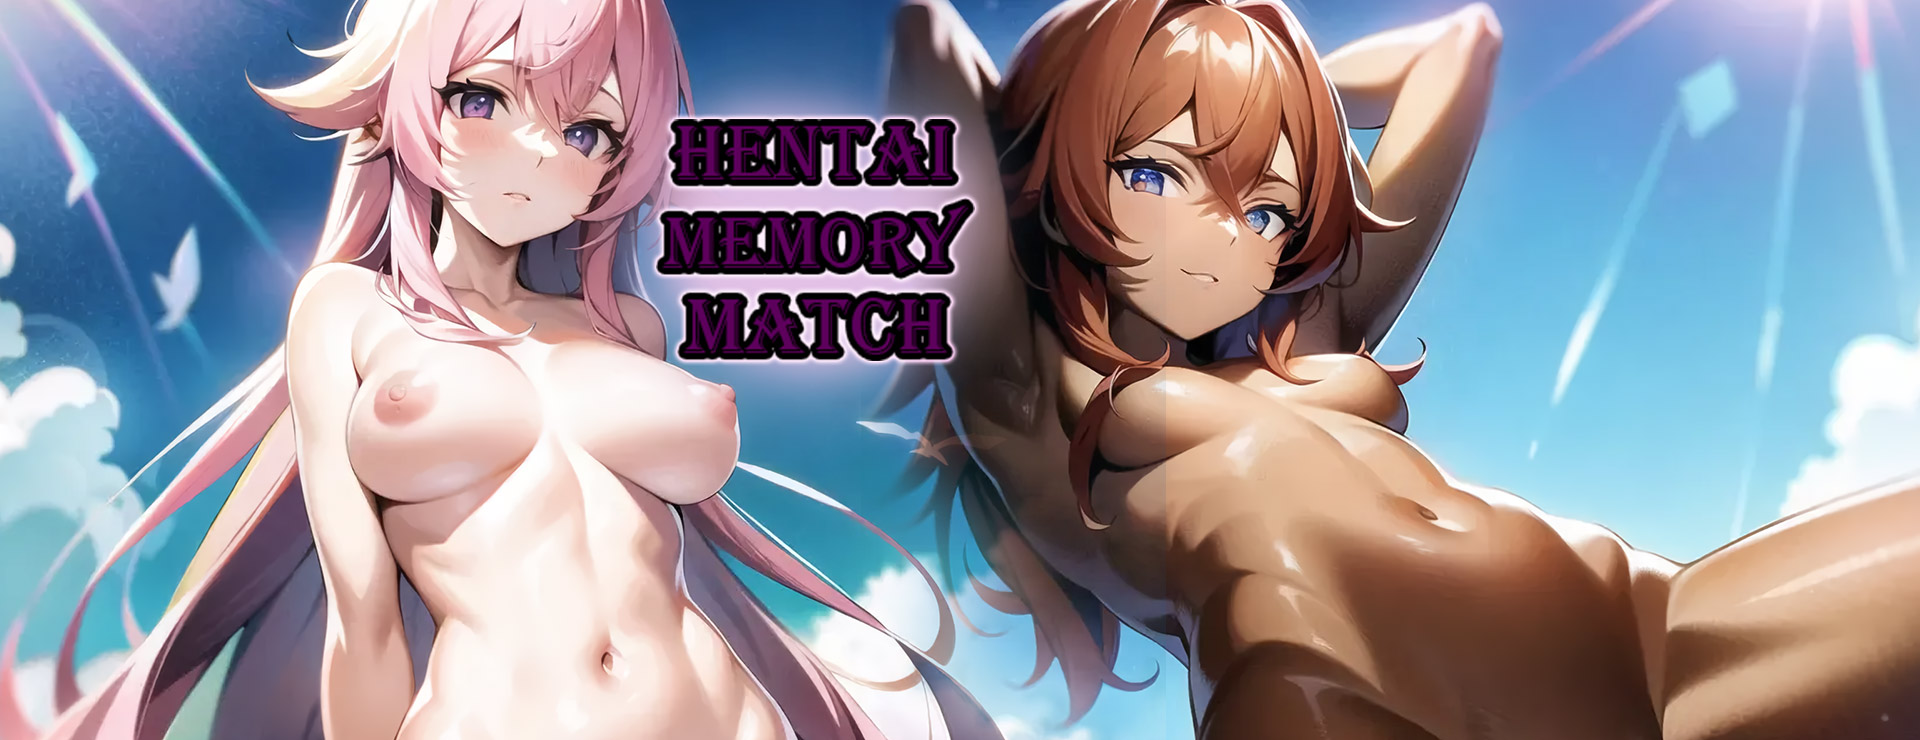 Hentai Memory Match - カジュアル ゲーム